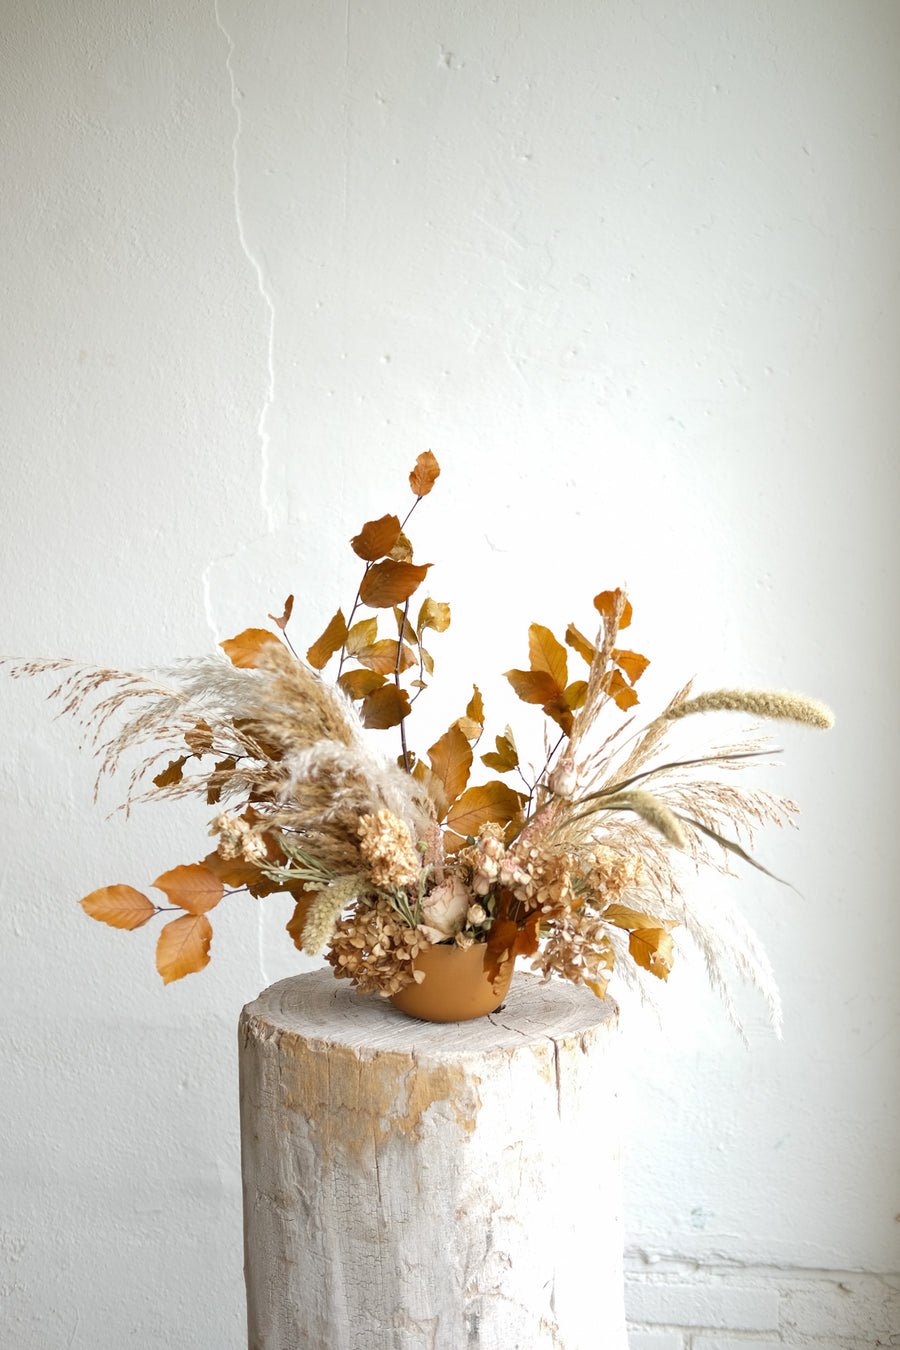 Dried Floral Arrangement